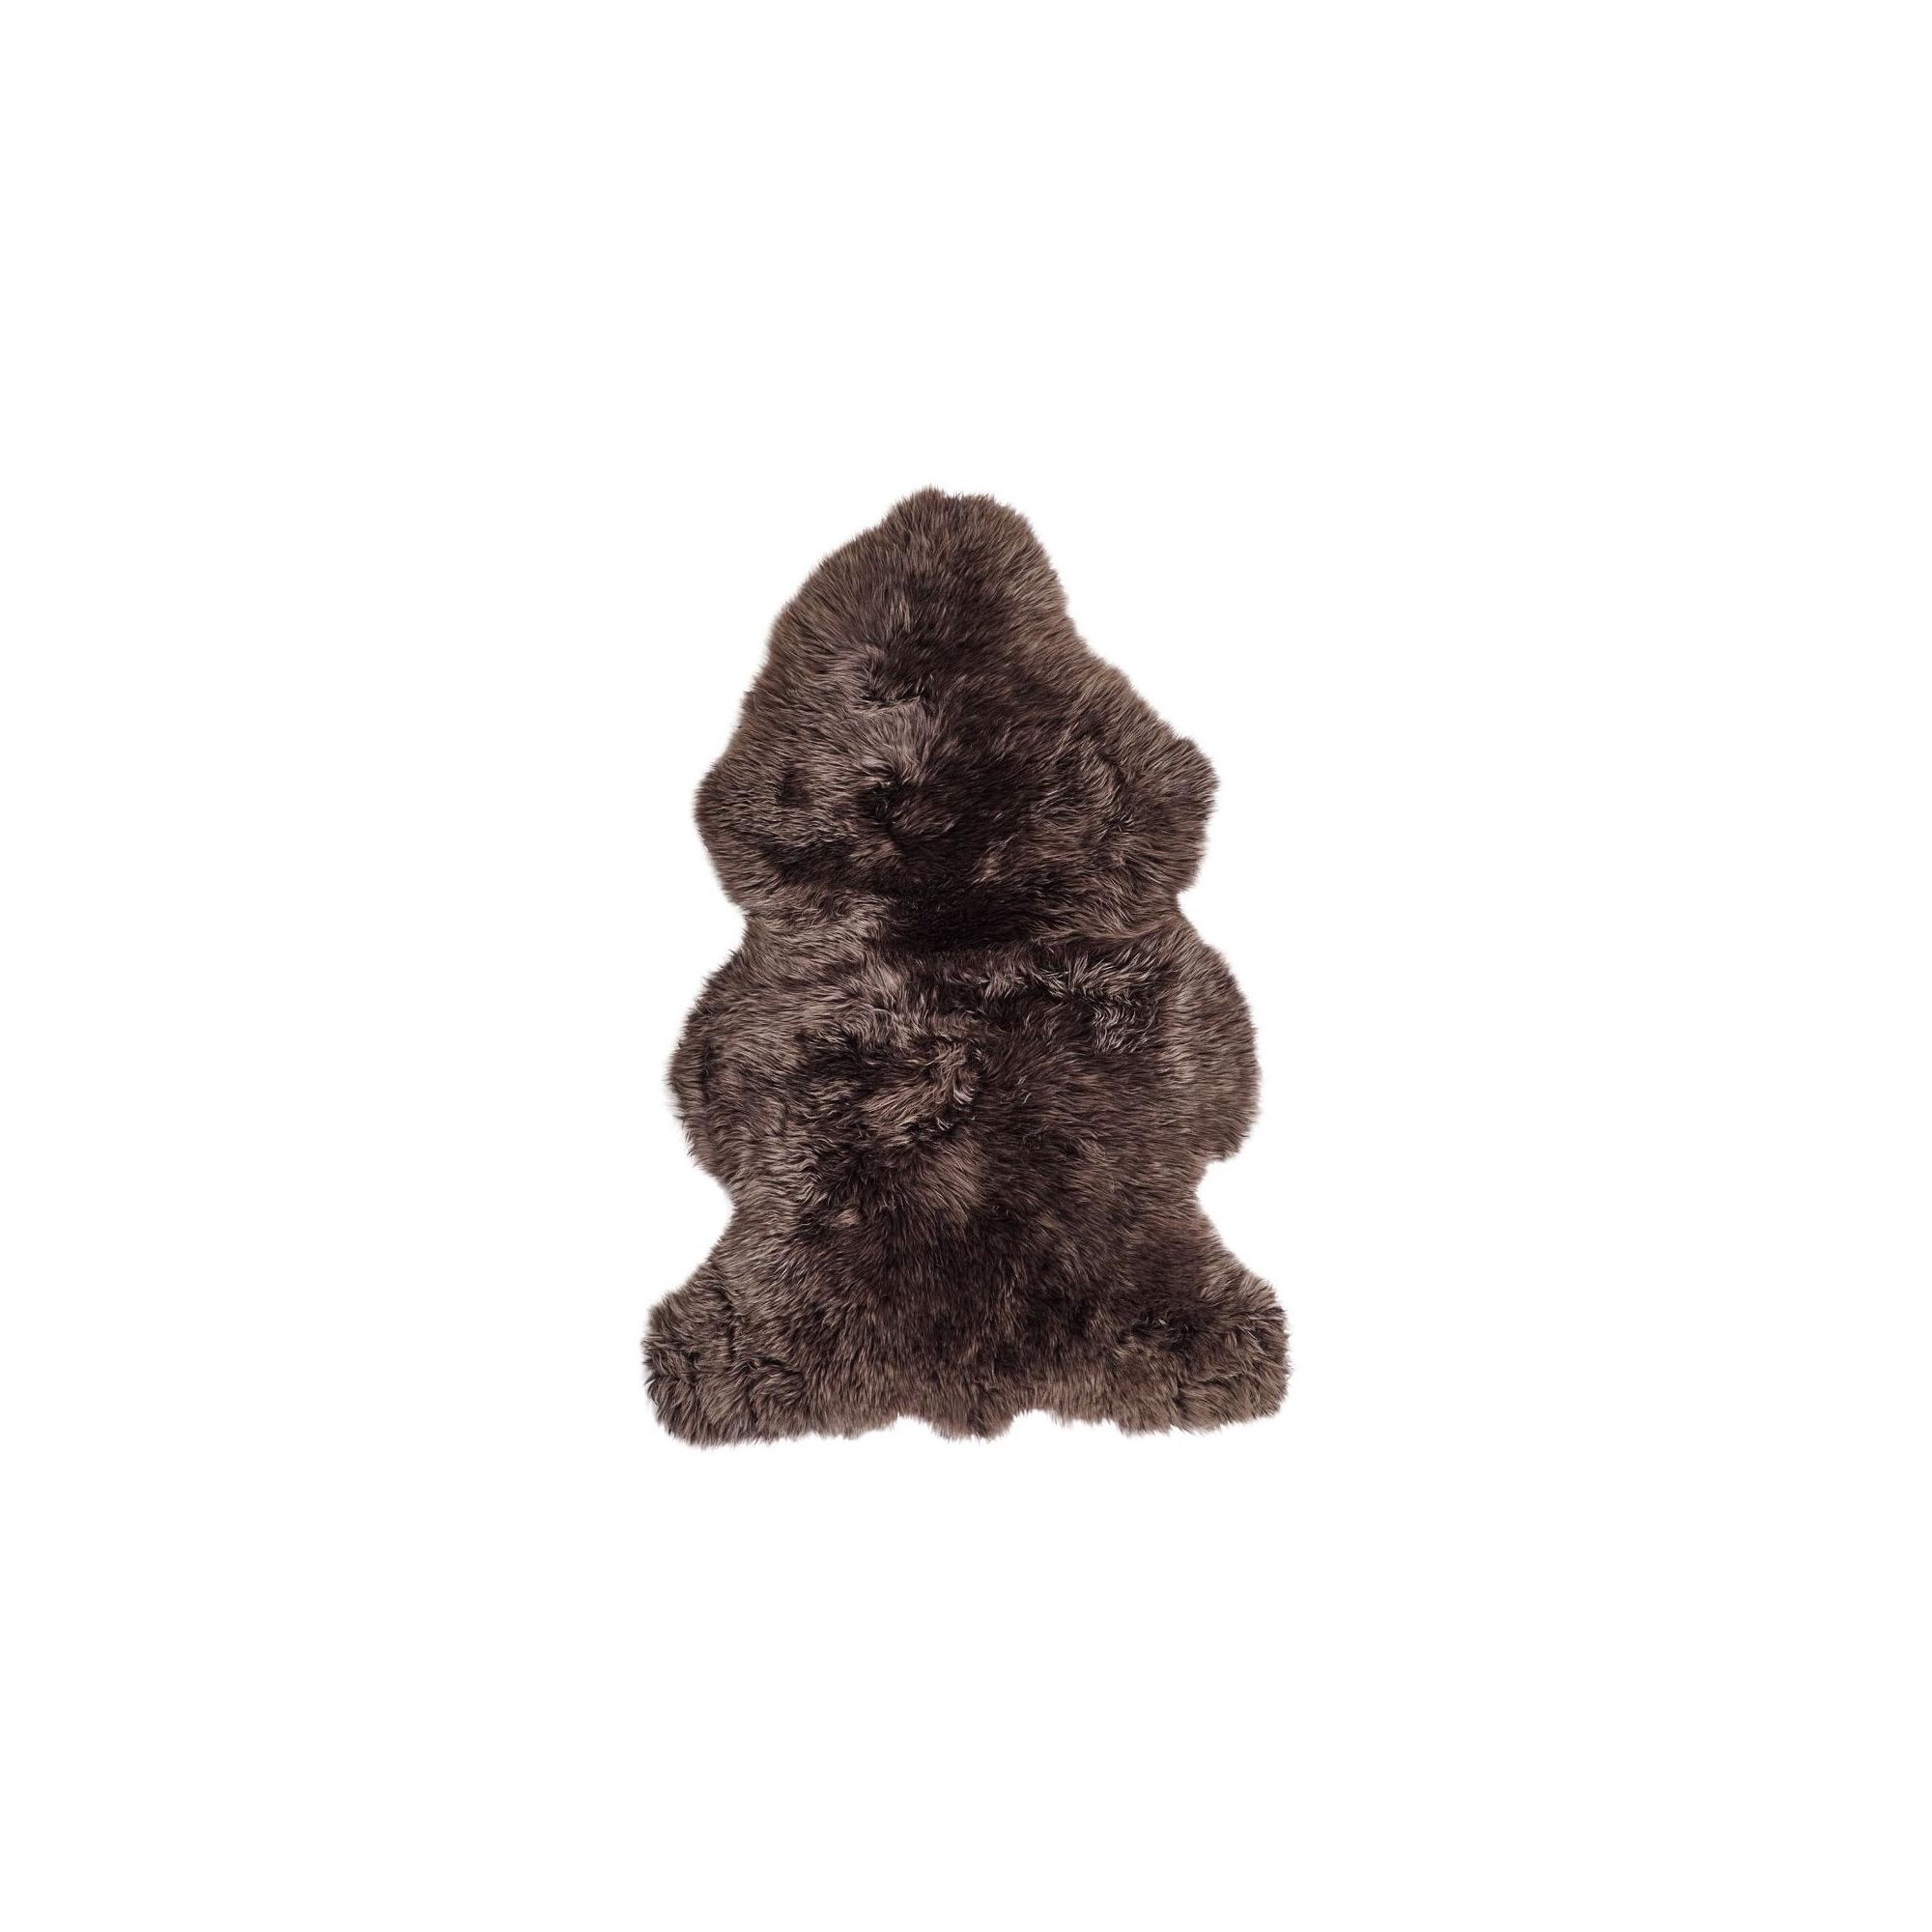  Newzealandsk Fåreskind 115 cm, Long Wool fra Natures Collection (Varenr: NCL1028)